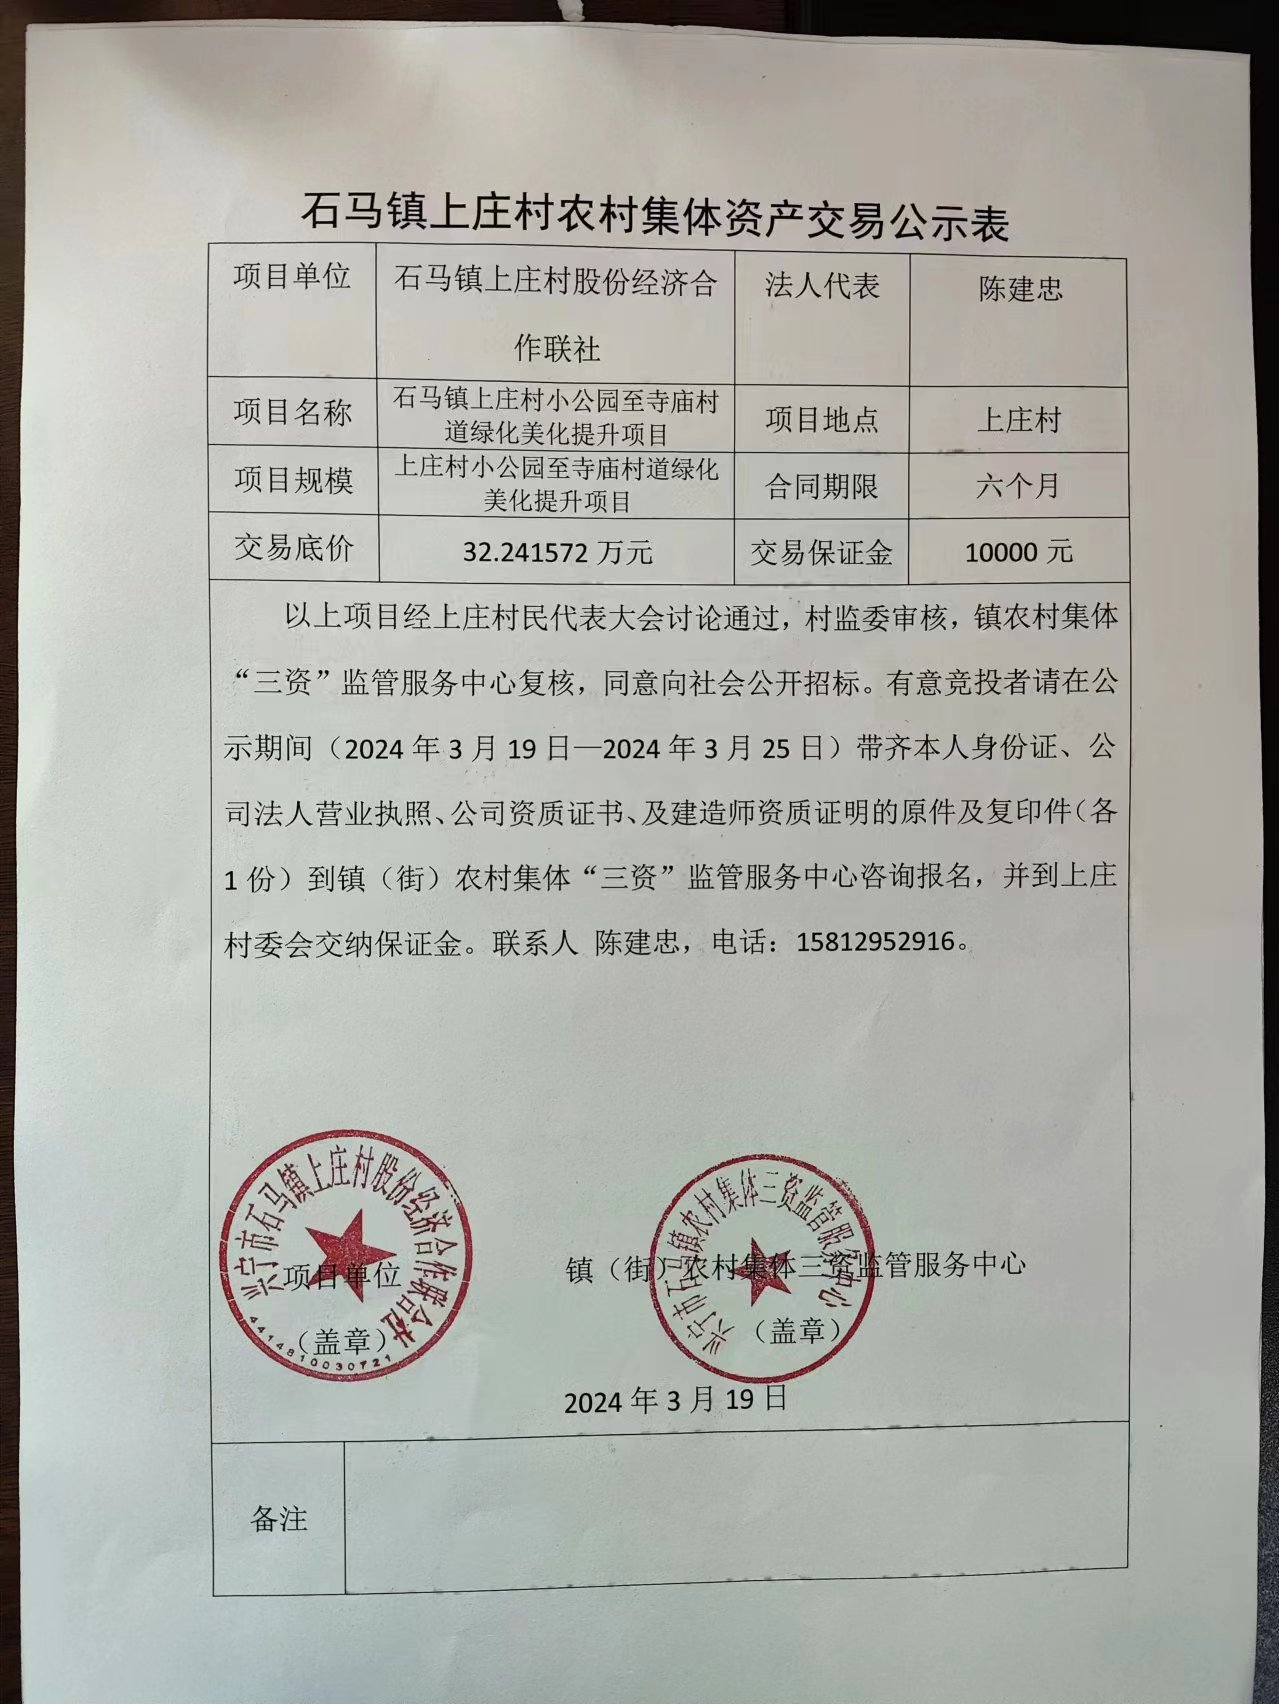 石马镇上庄村农村集体资产交易公示表2024.3.19.jpg